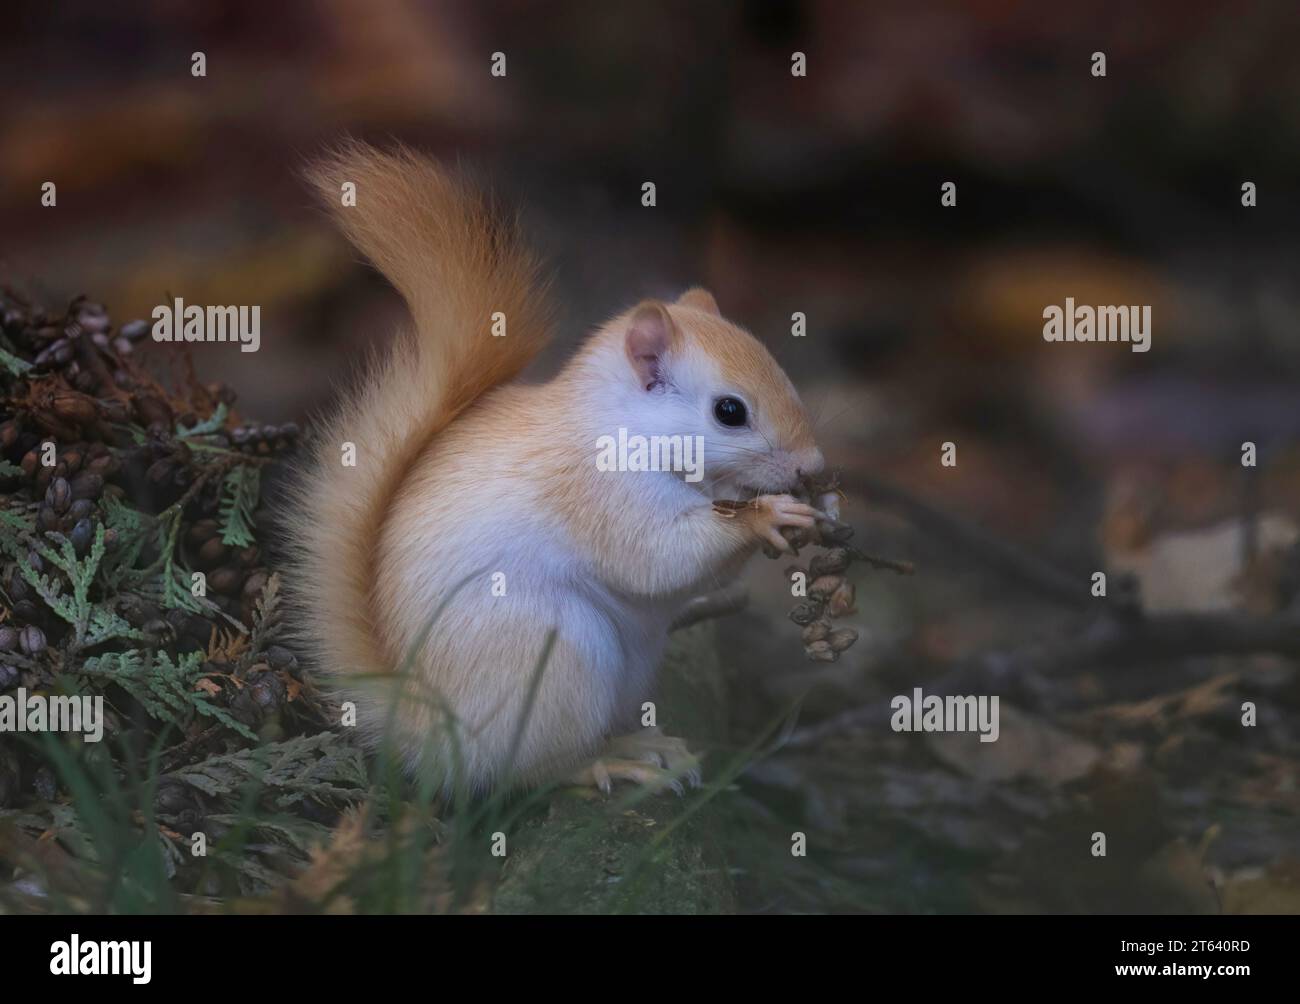 Écureuil blanc (écureuil roux leuciste) mangeant des graines dans la forêt en automne Banque D'Images